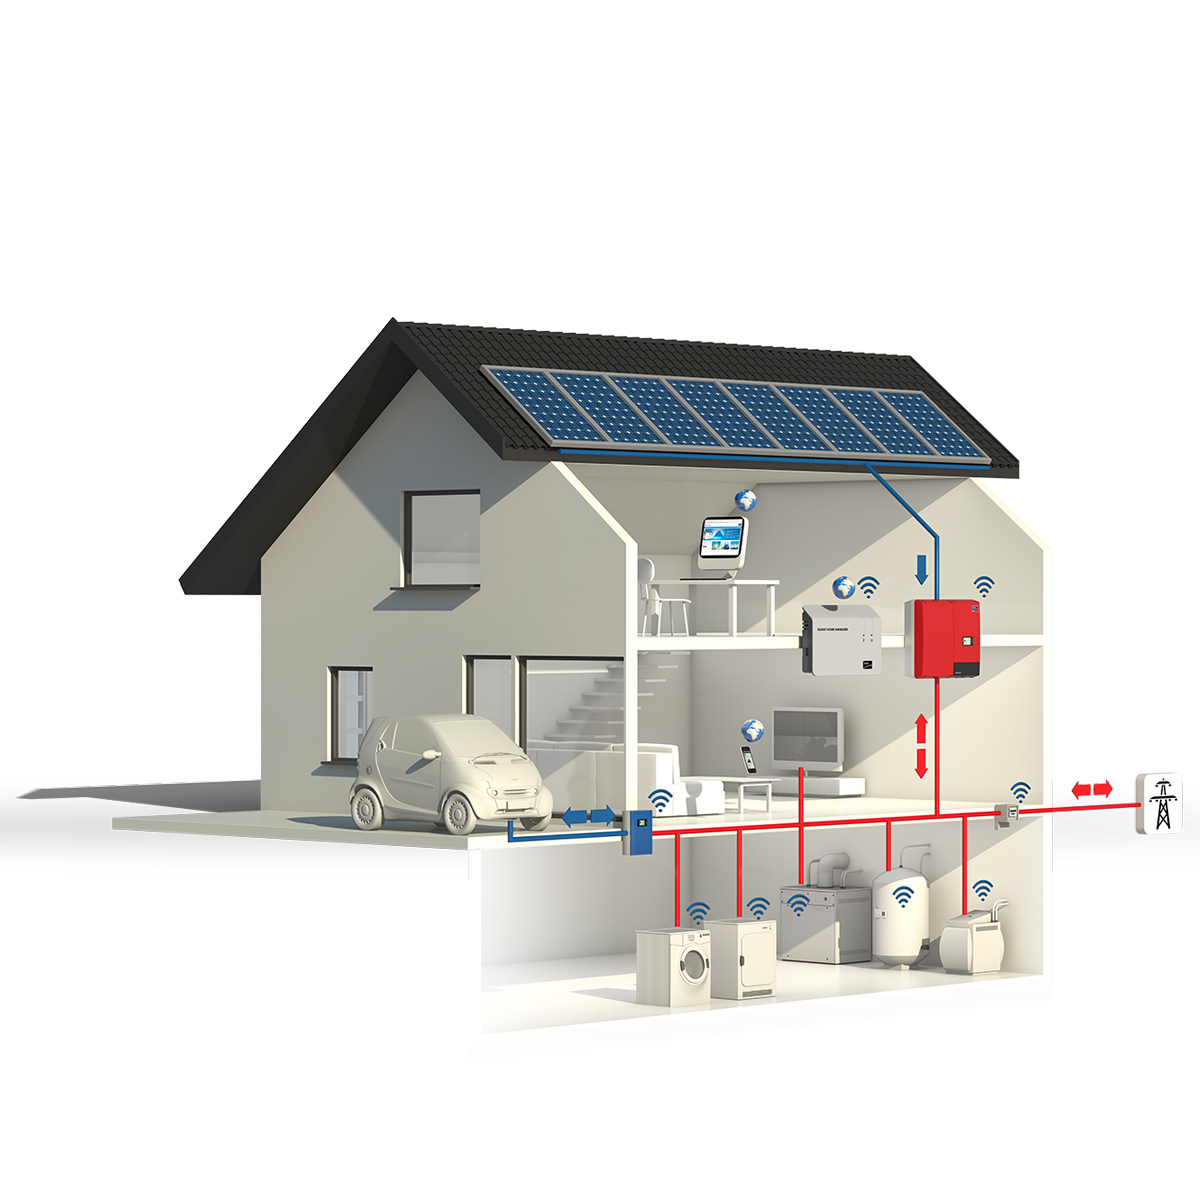 सूर्यको शक्ति प्रयोग गर्नुहोस्: तपाईंको घरको लागि पूर्ण सेट सौर ऊर्जा प्रणाली